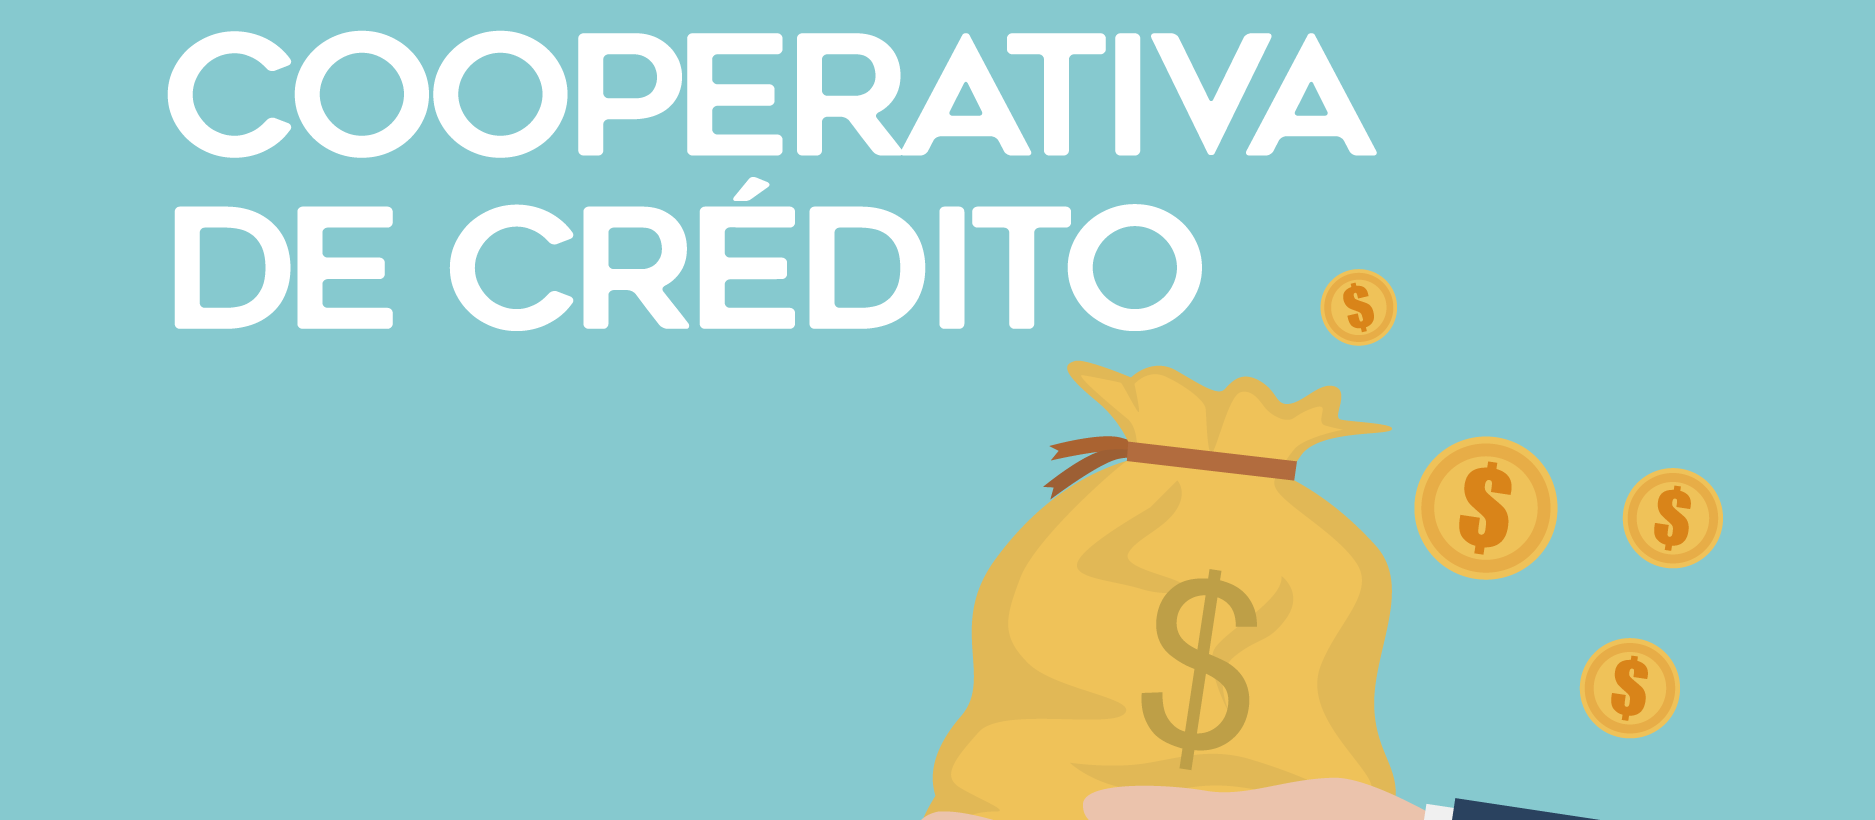 Cooperativas de crédito representam menos de 8% do mercado de crédito do país